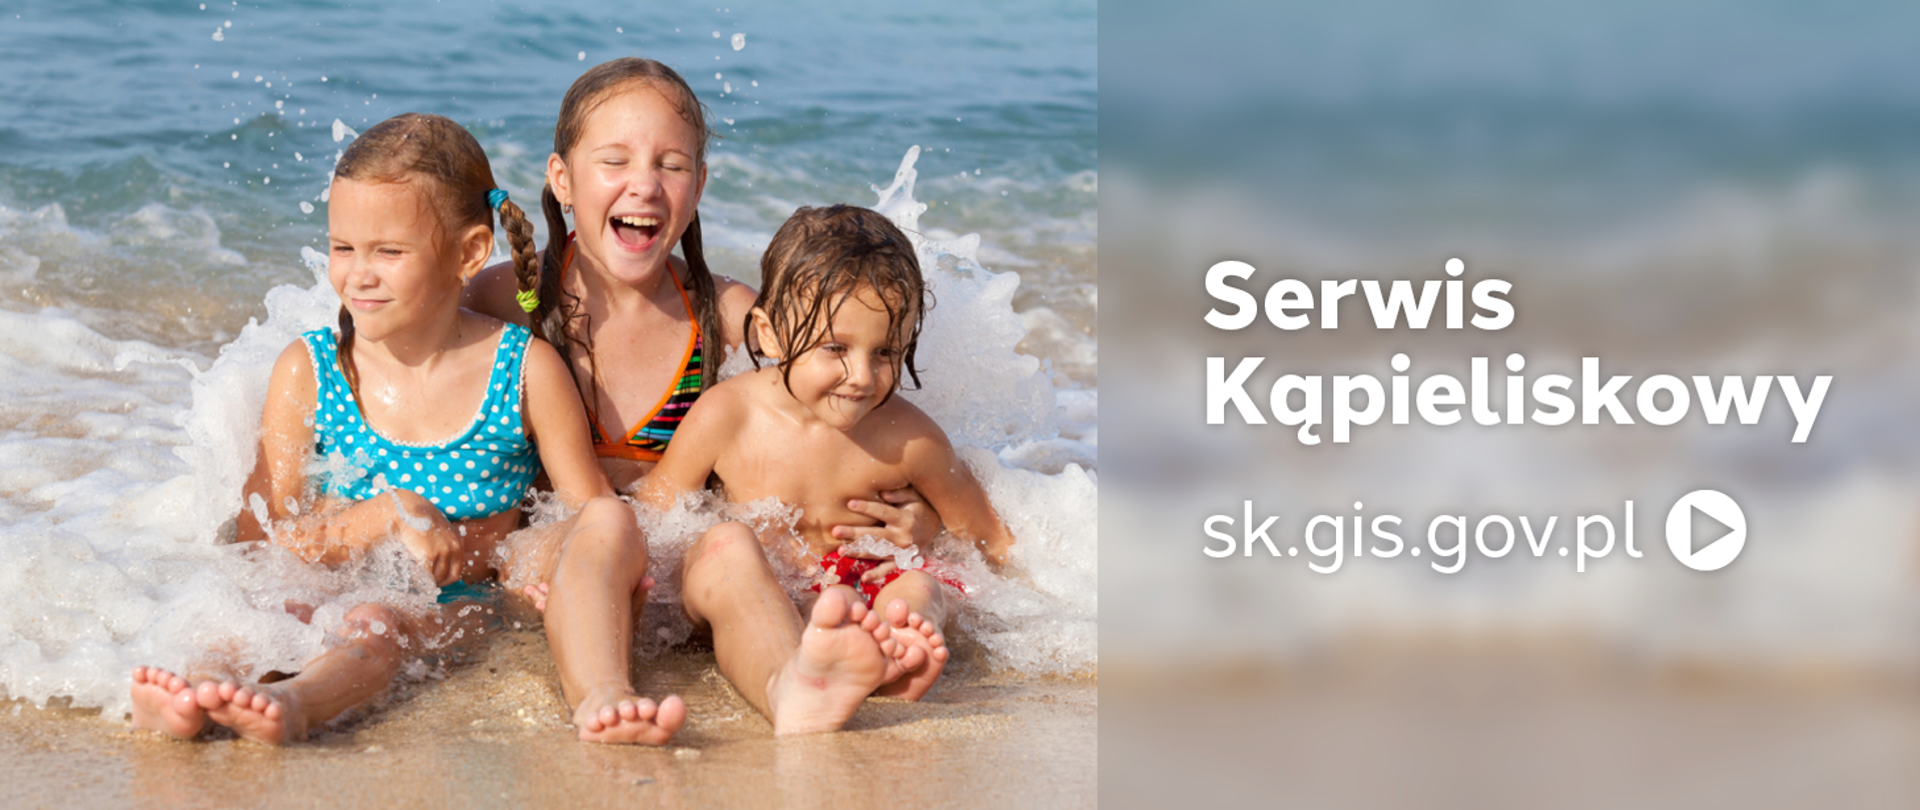 na brzegu spienionej wody siedzą radosne dzieci w strojach kapielowych, z prawej strony napis Serwis kąpieliskowy sk.gis.gov.pl